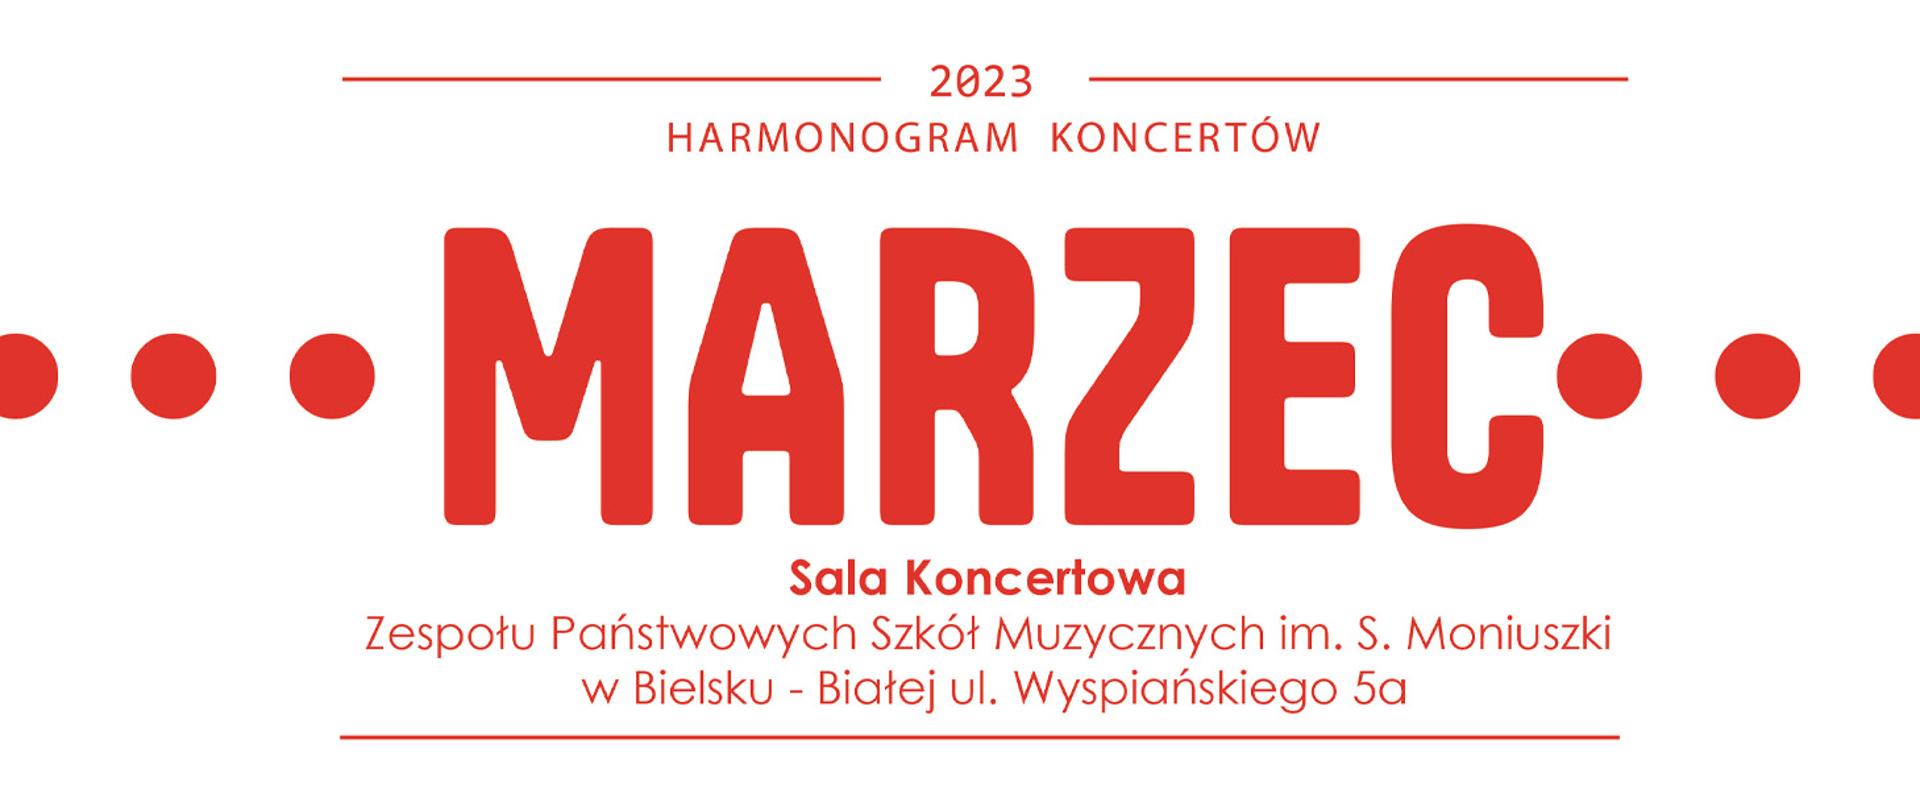 Baner na białym tle, czerwony napis harmonogram koncertów Marzec 2023 w sali koncertowej ZPSM w BB